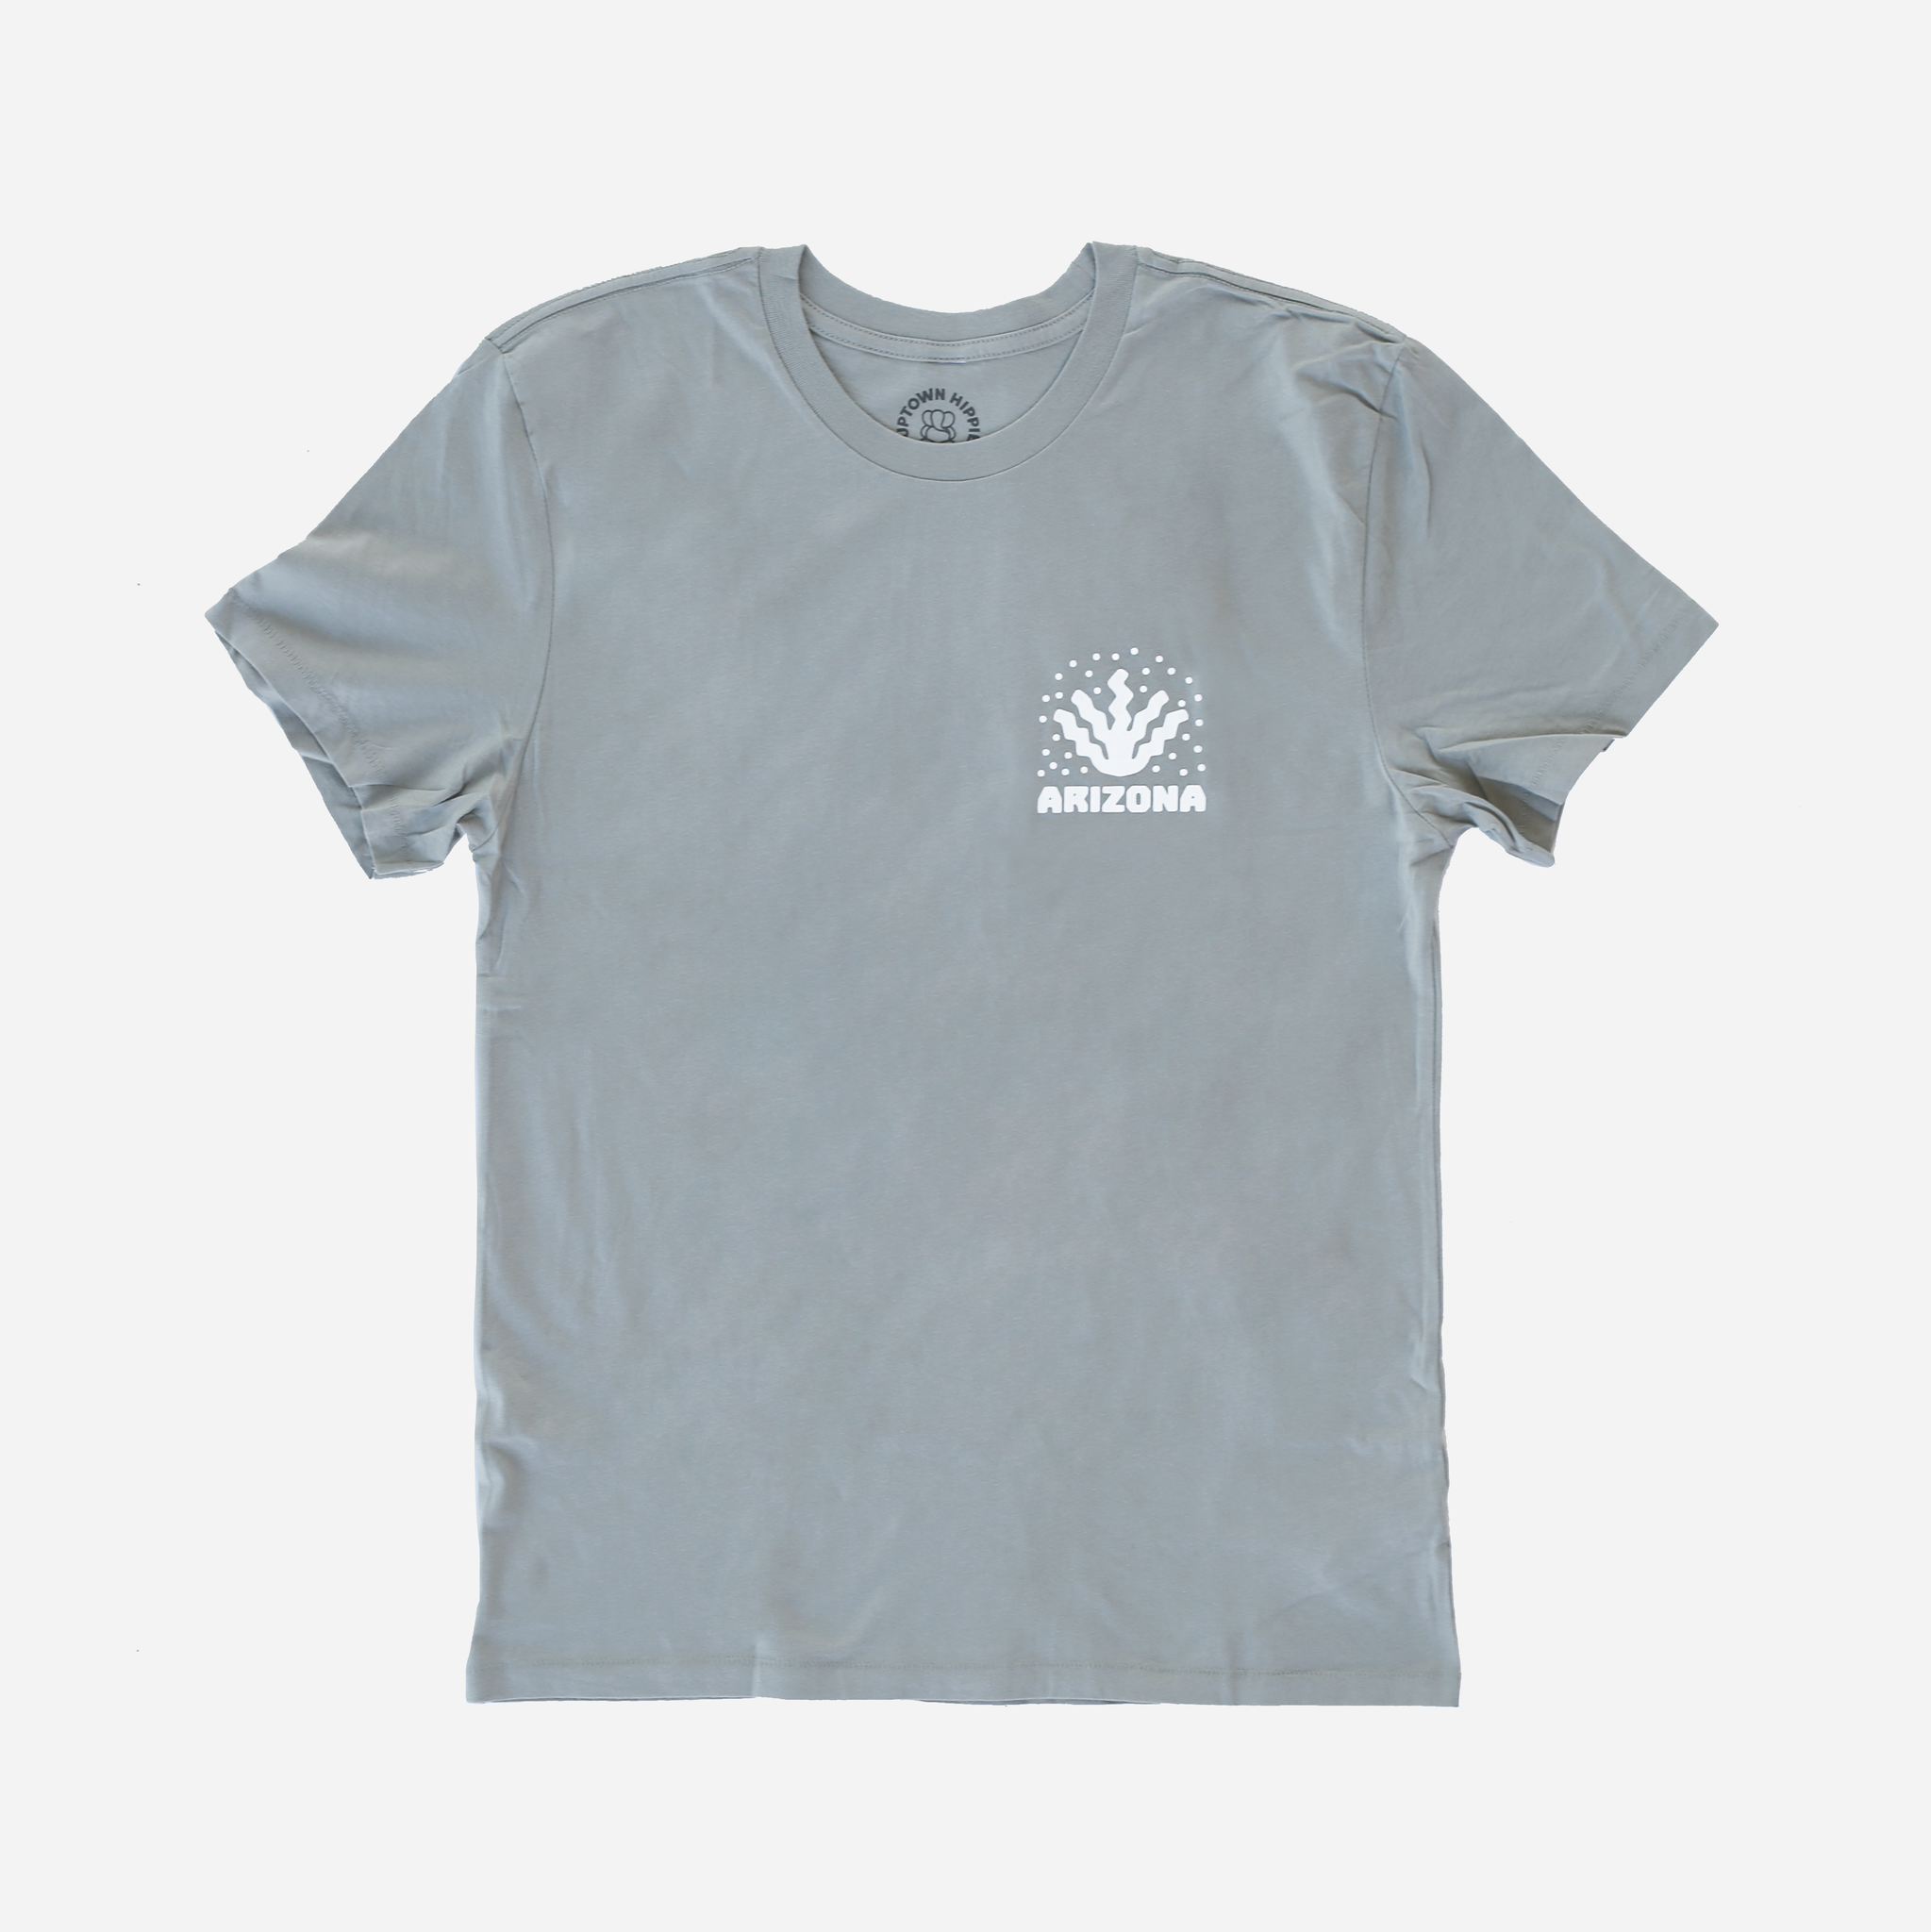 Arizona Agave Shirt